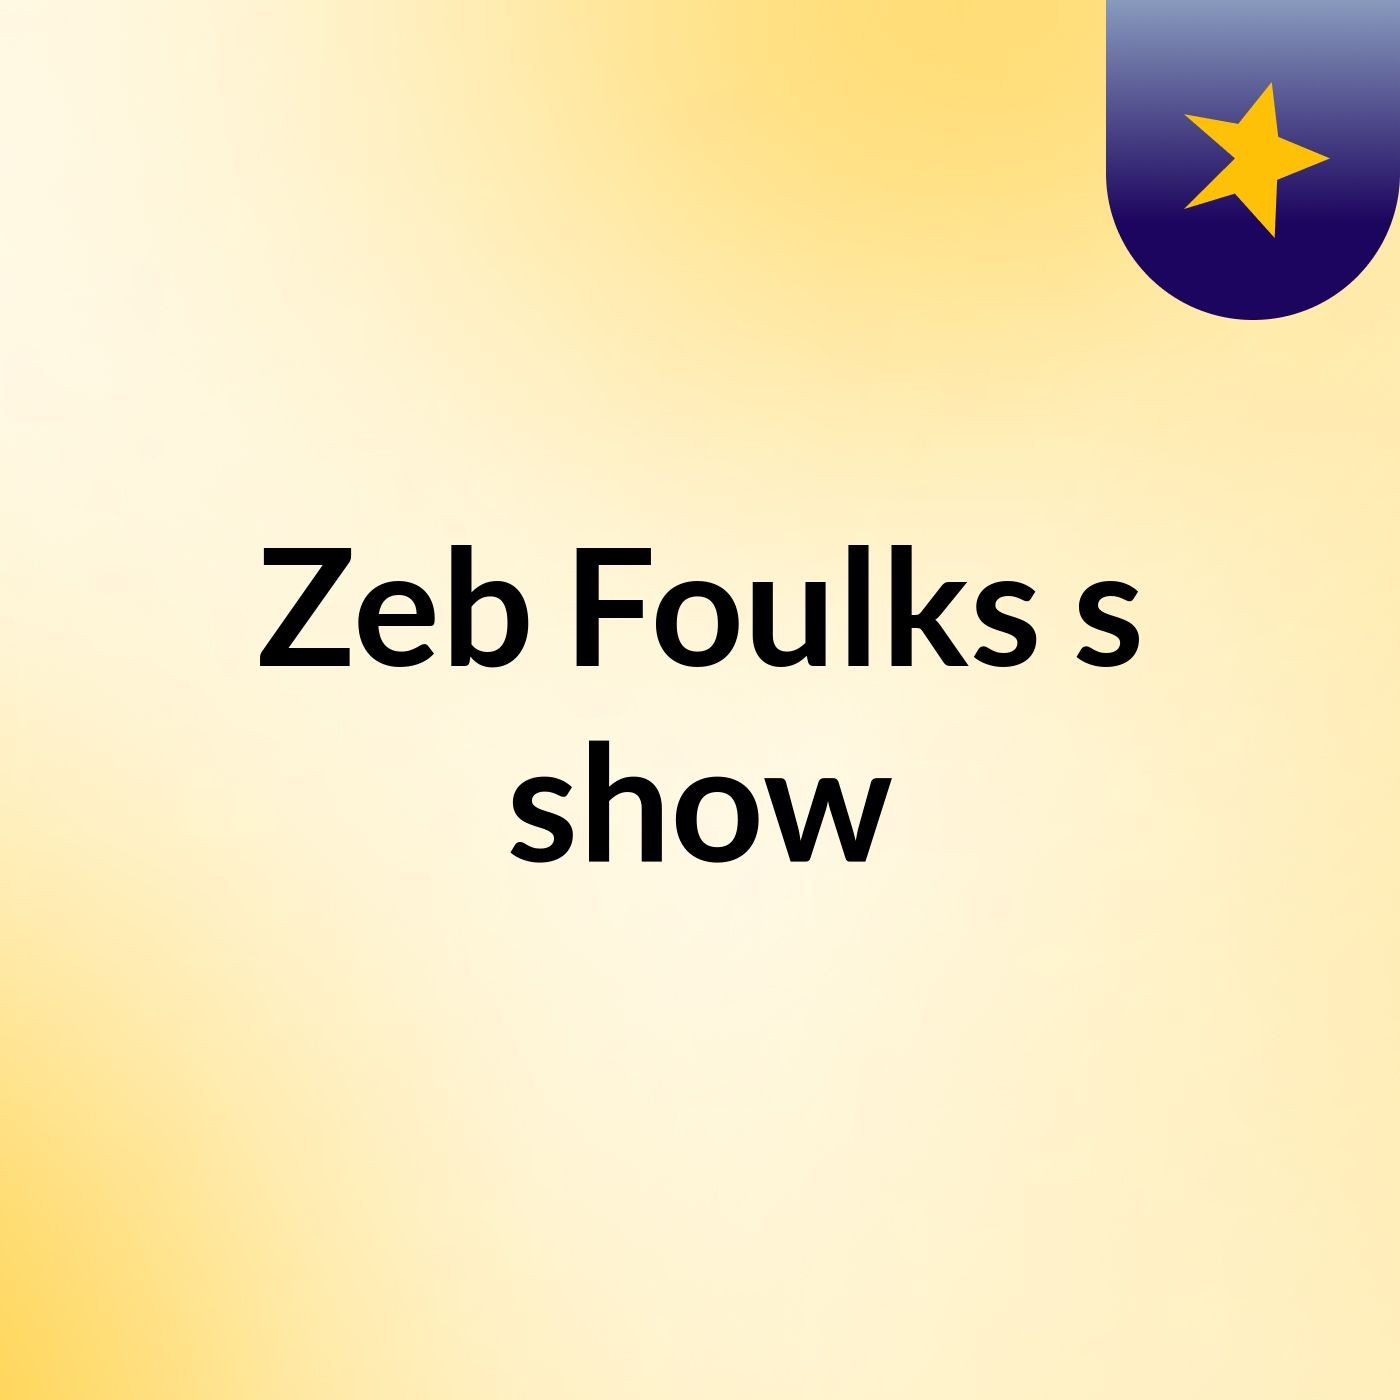 Zeb Foulks's show